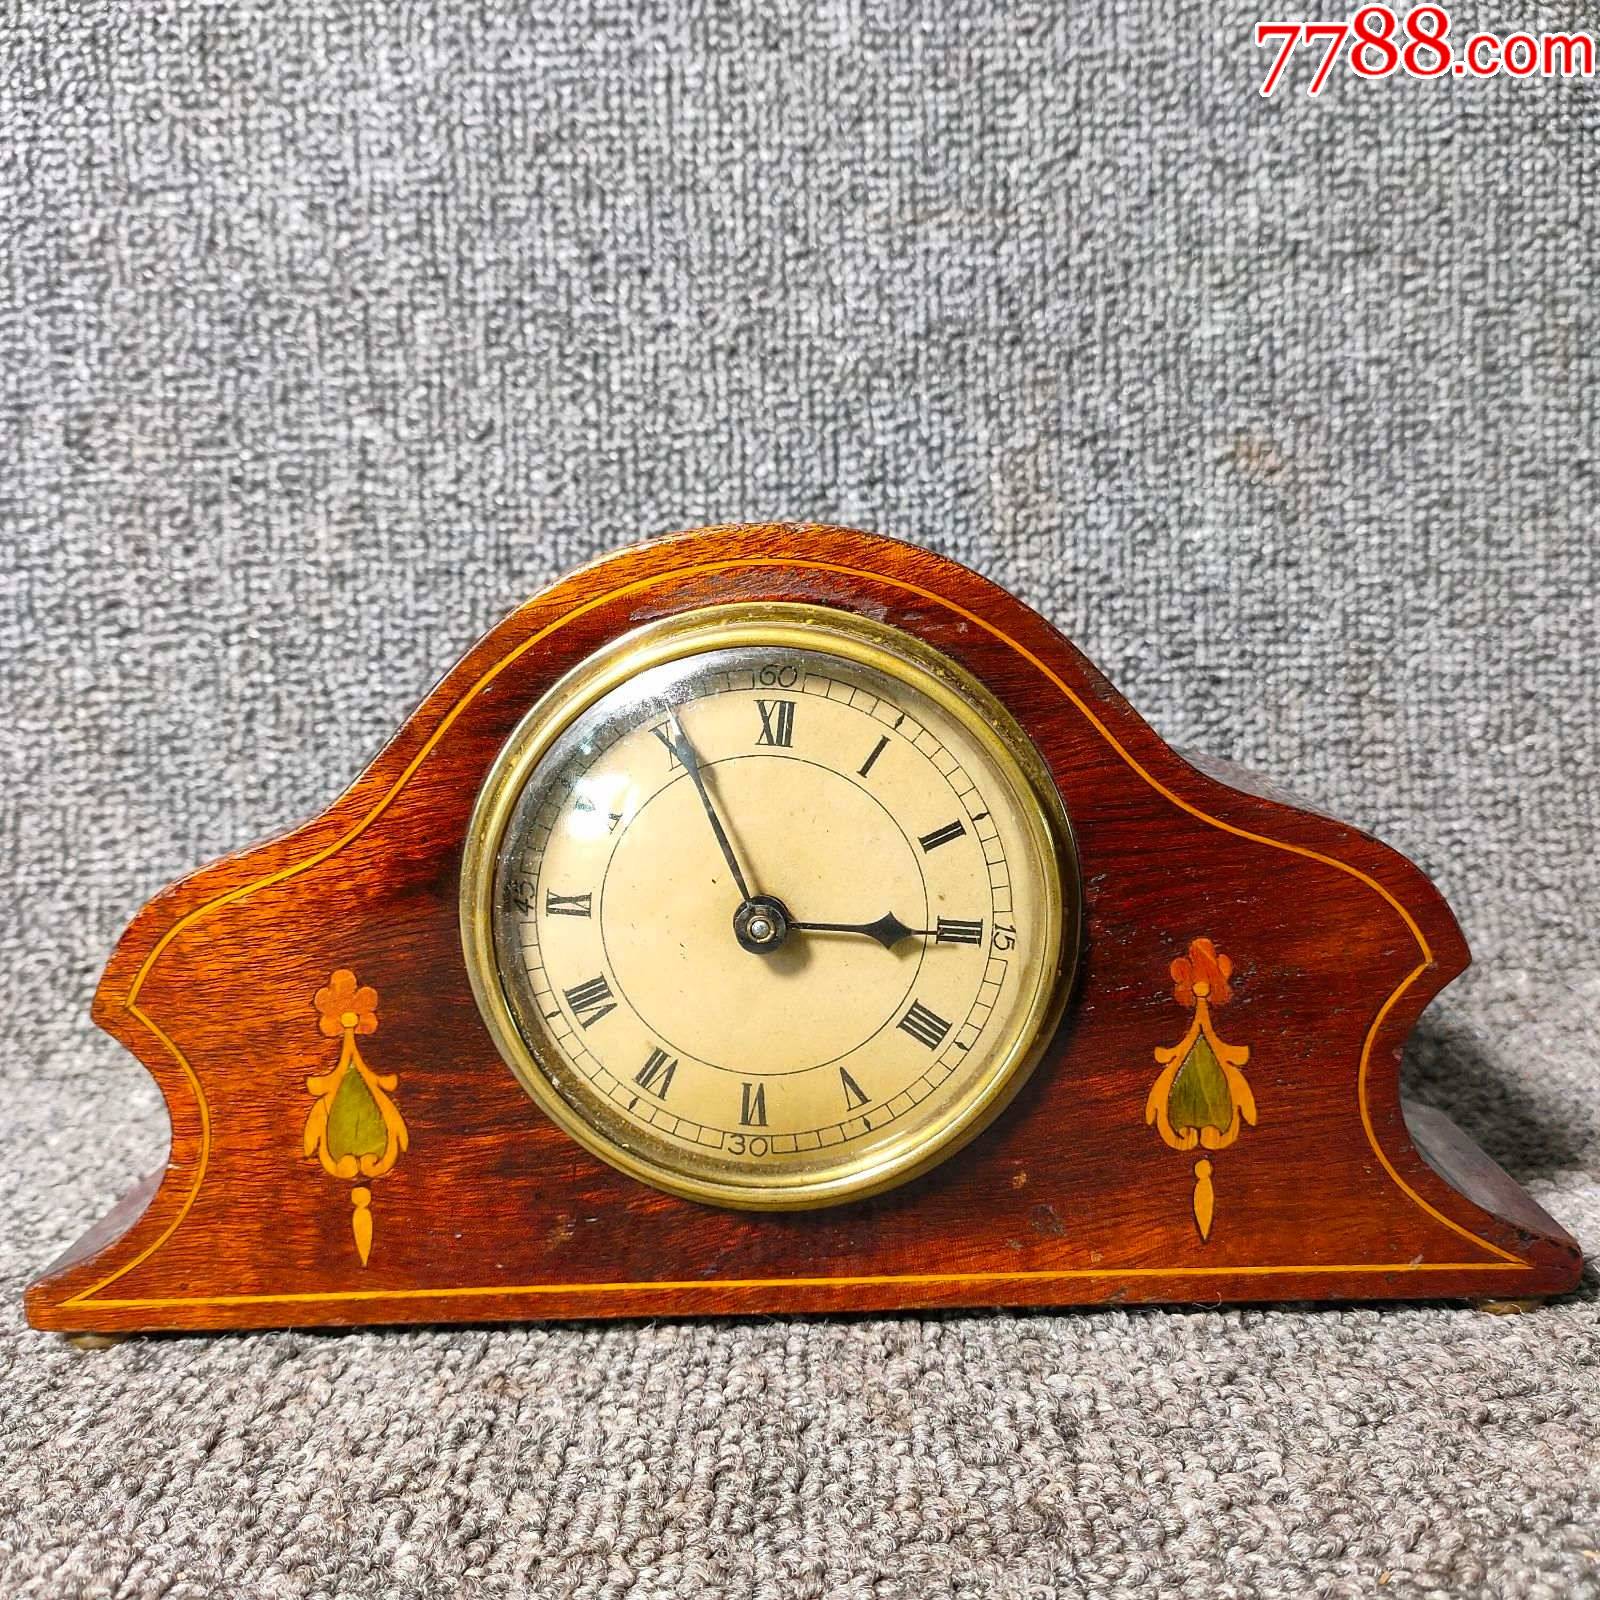 20世纪早期英国古董老式发条小座钟功能正常木壳小钟表壁炉钟